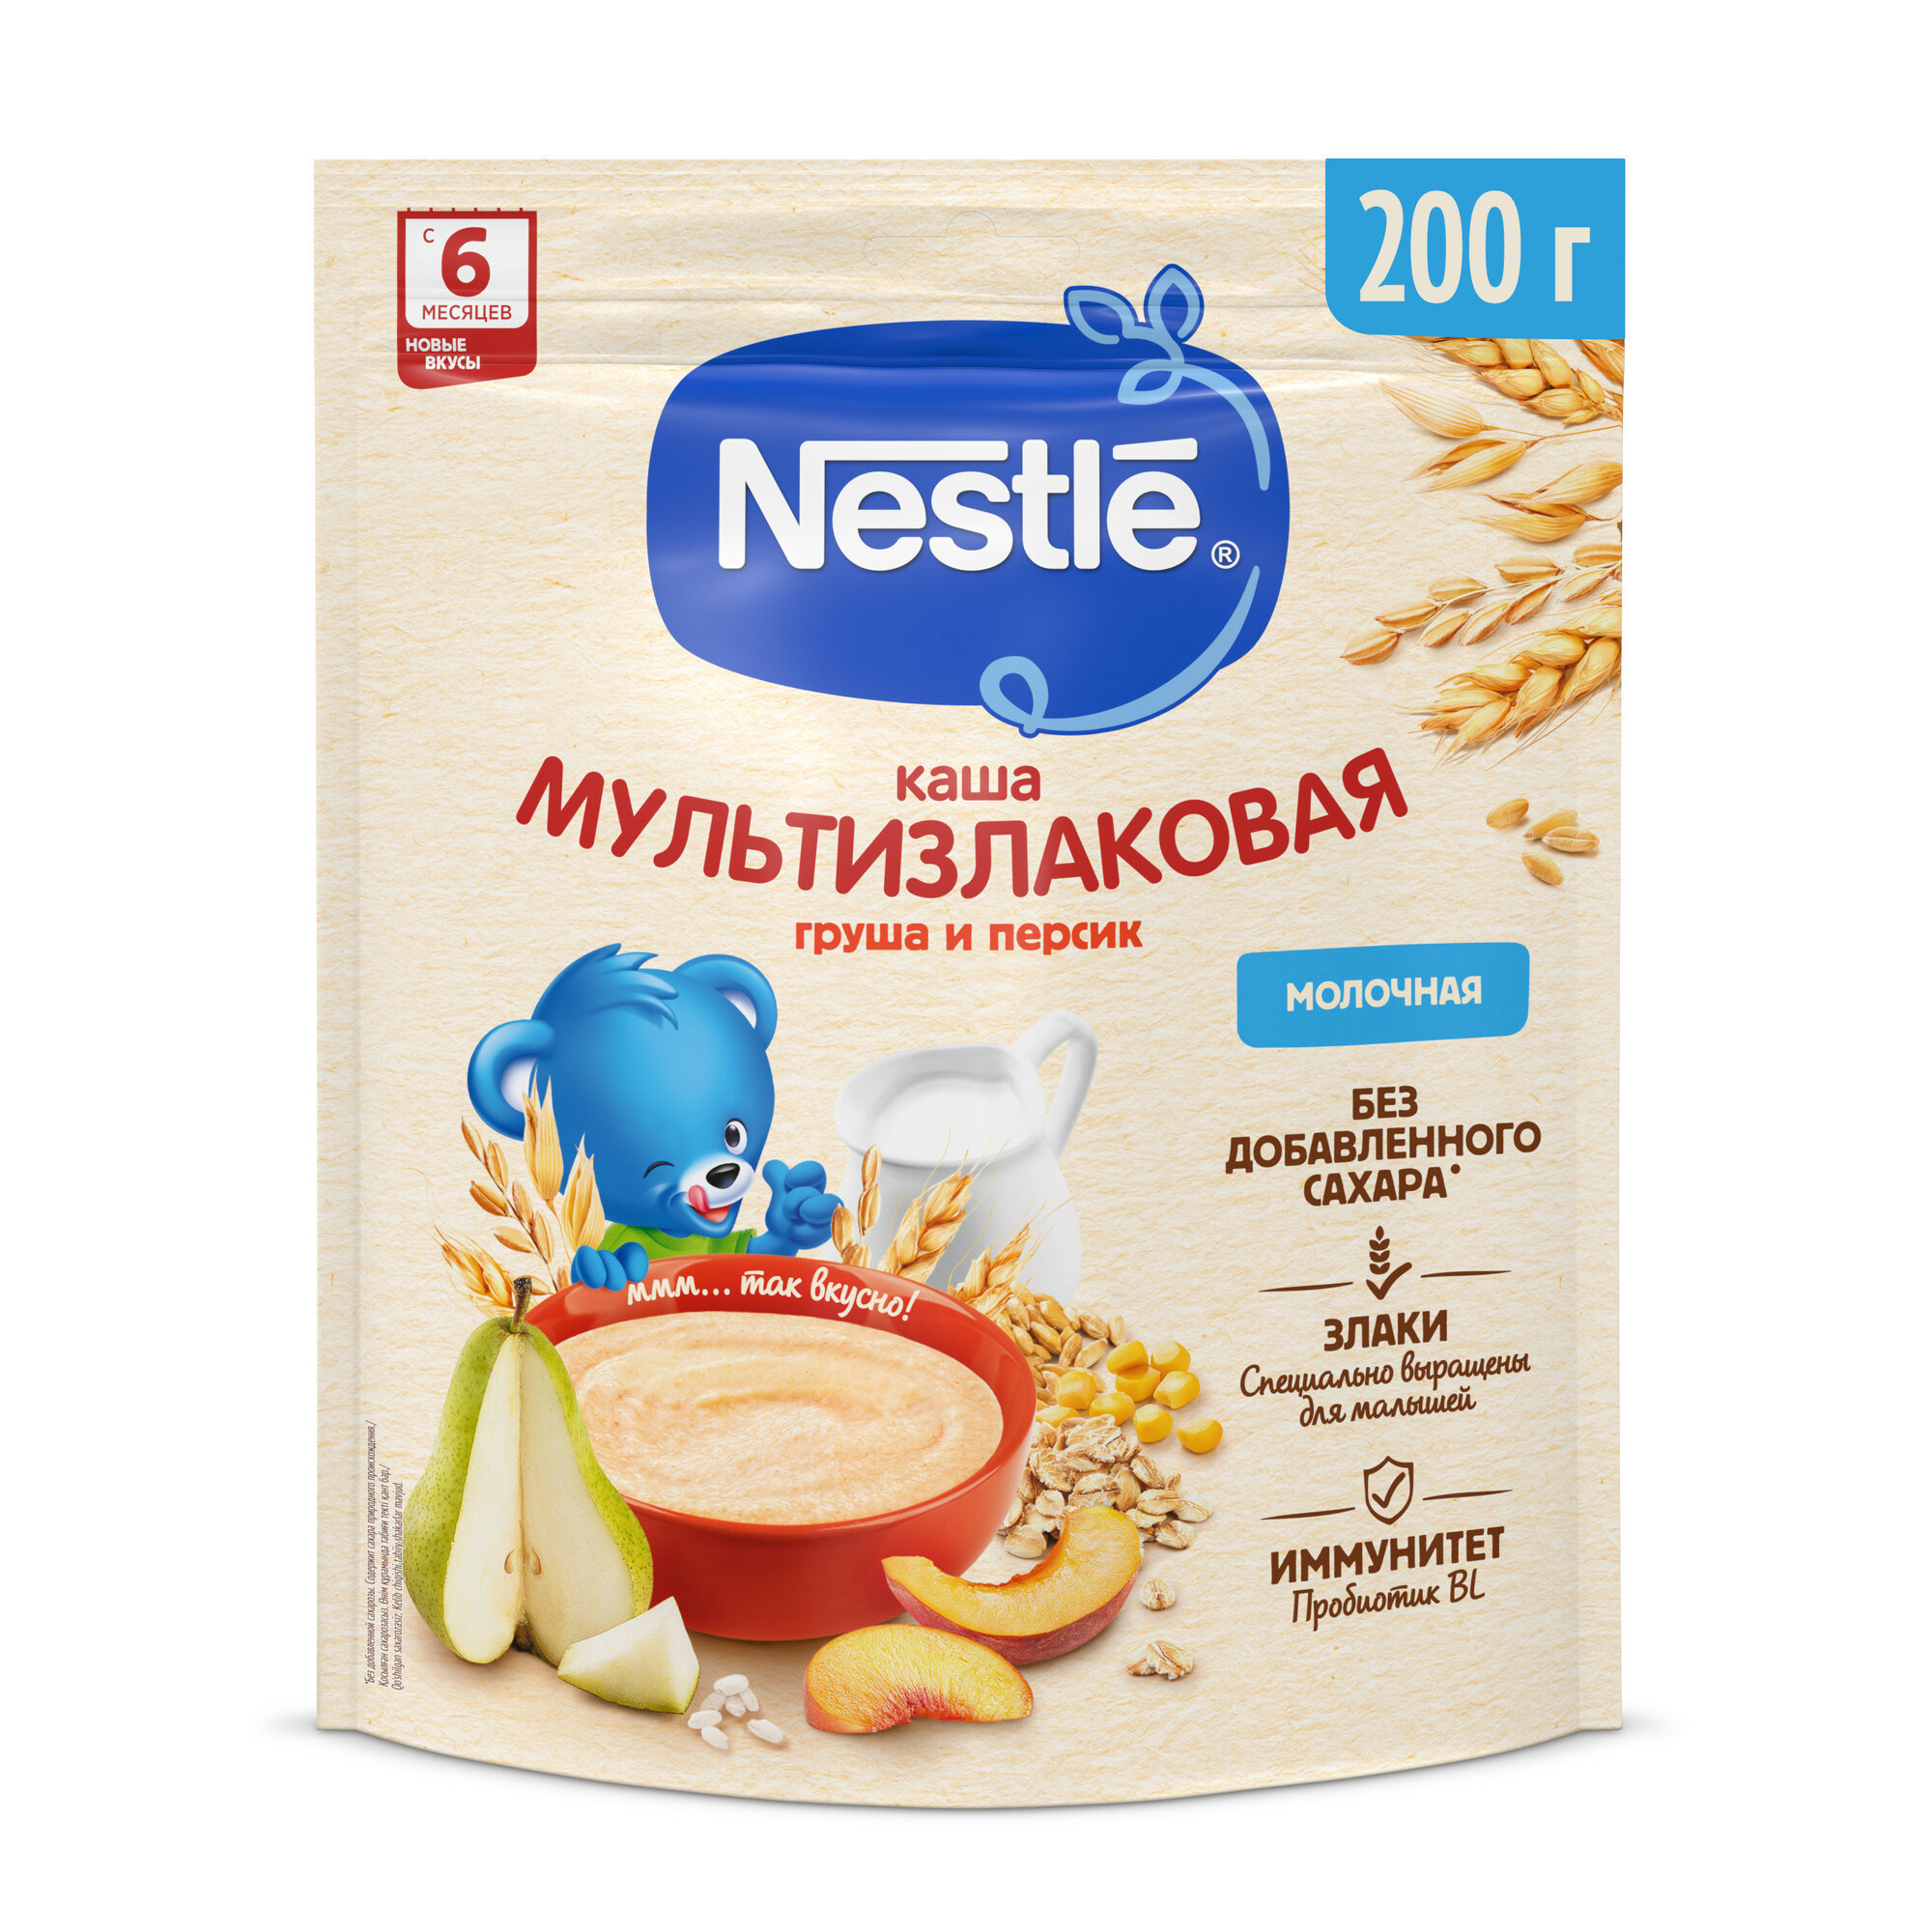 Каша Nestle Молочная мультизлаковая Груша-Персик с 6 месяцев 200г - фото №1